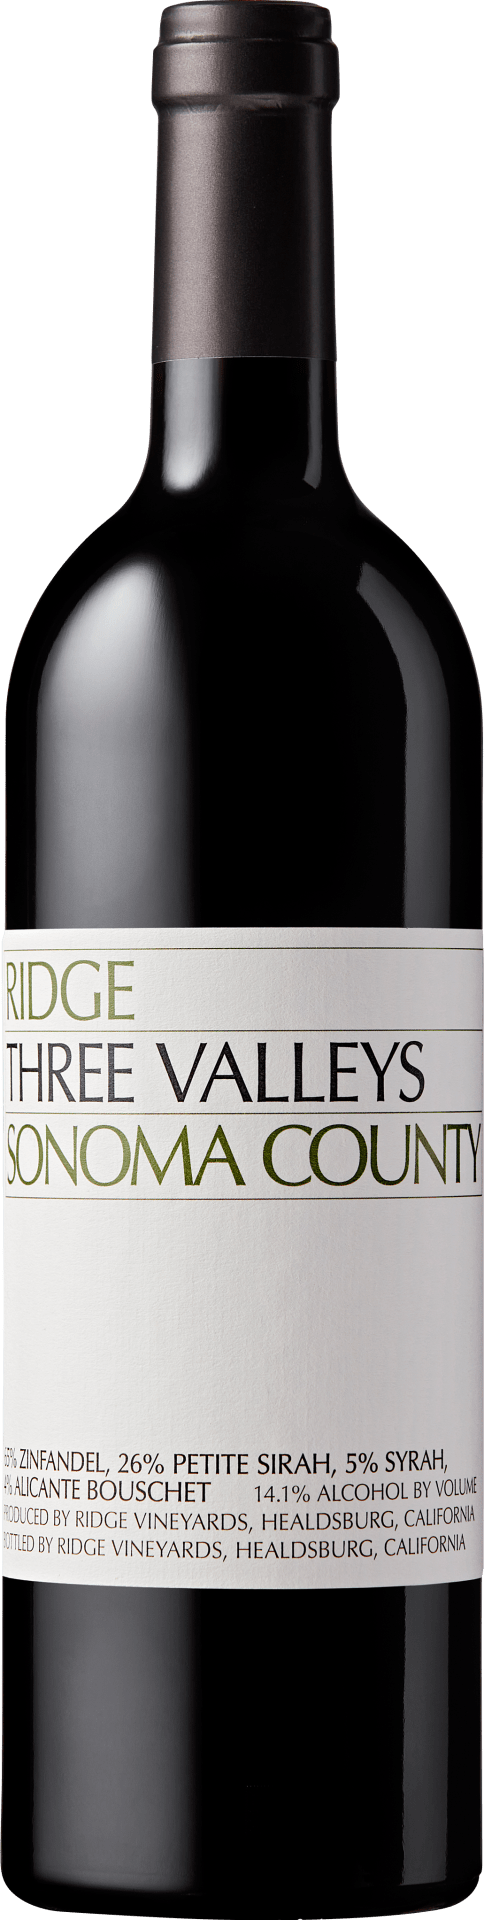 Ridge Three Valleys